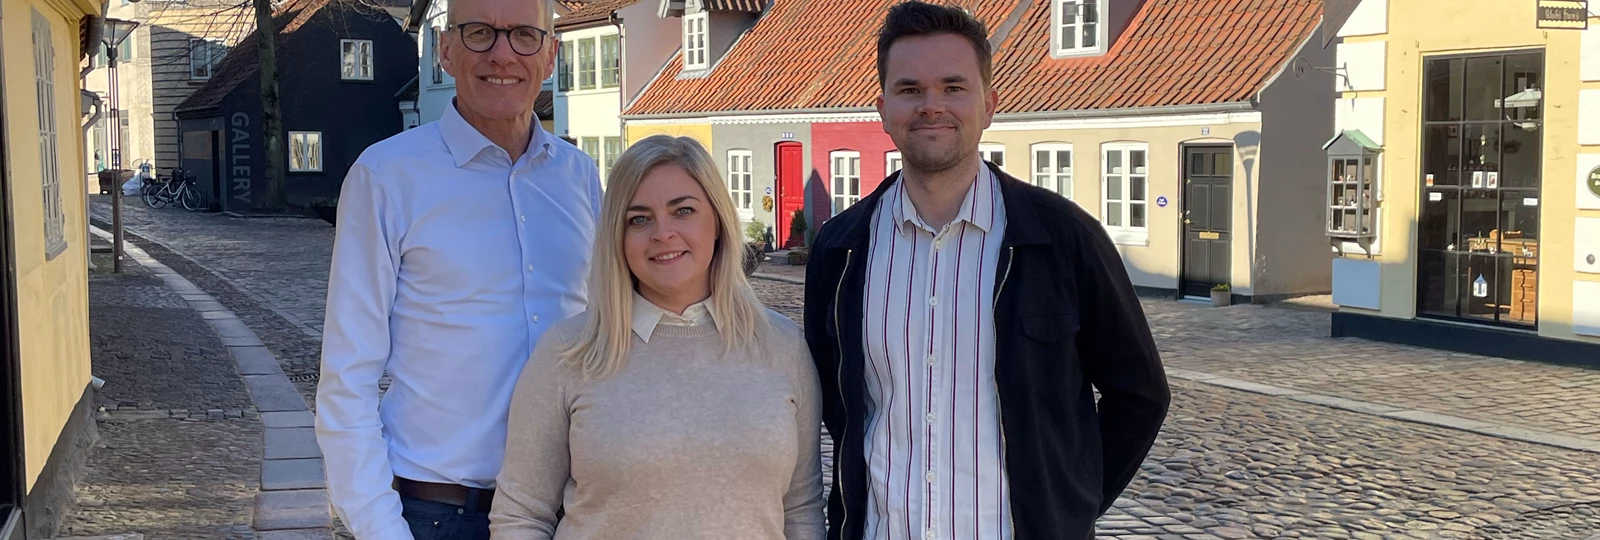 Stor nyhed: Vi har åbnet en afdeling i Odense